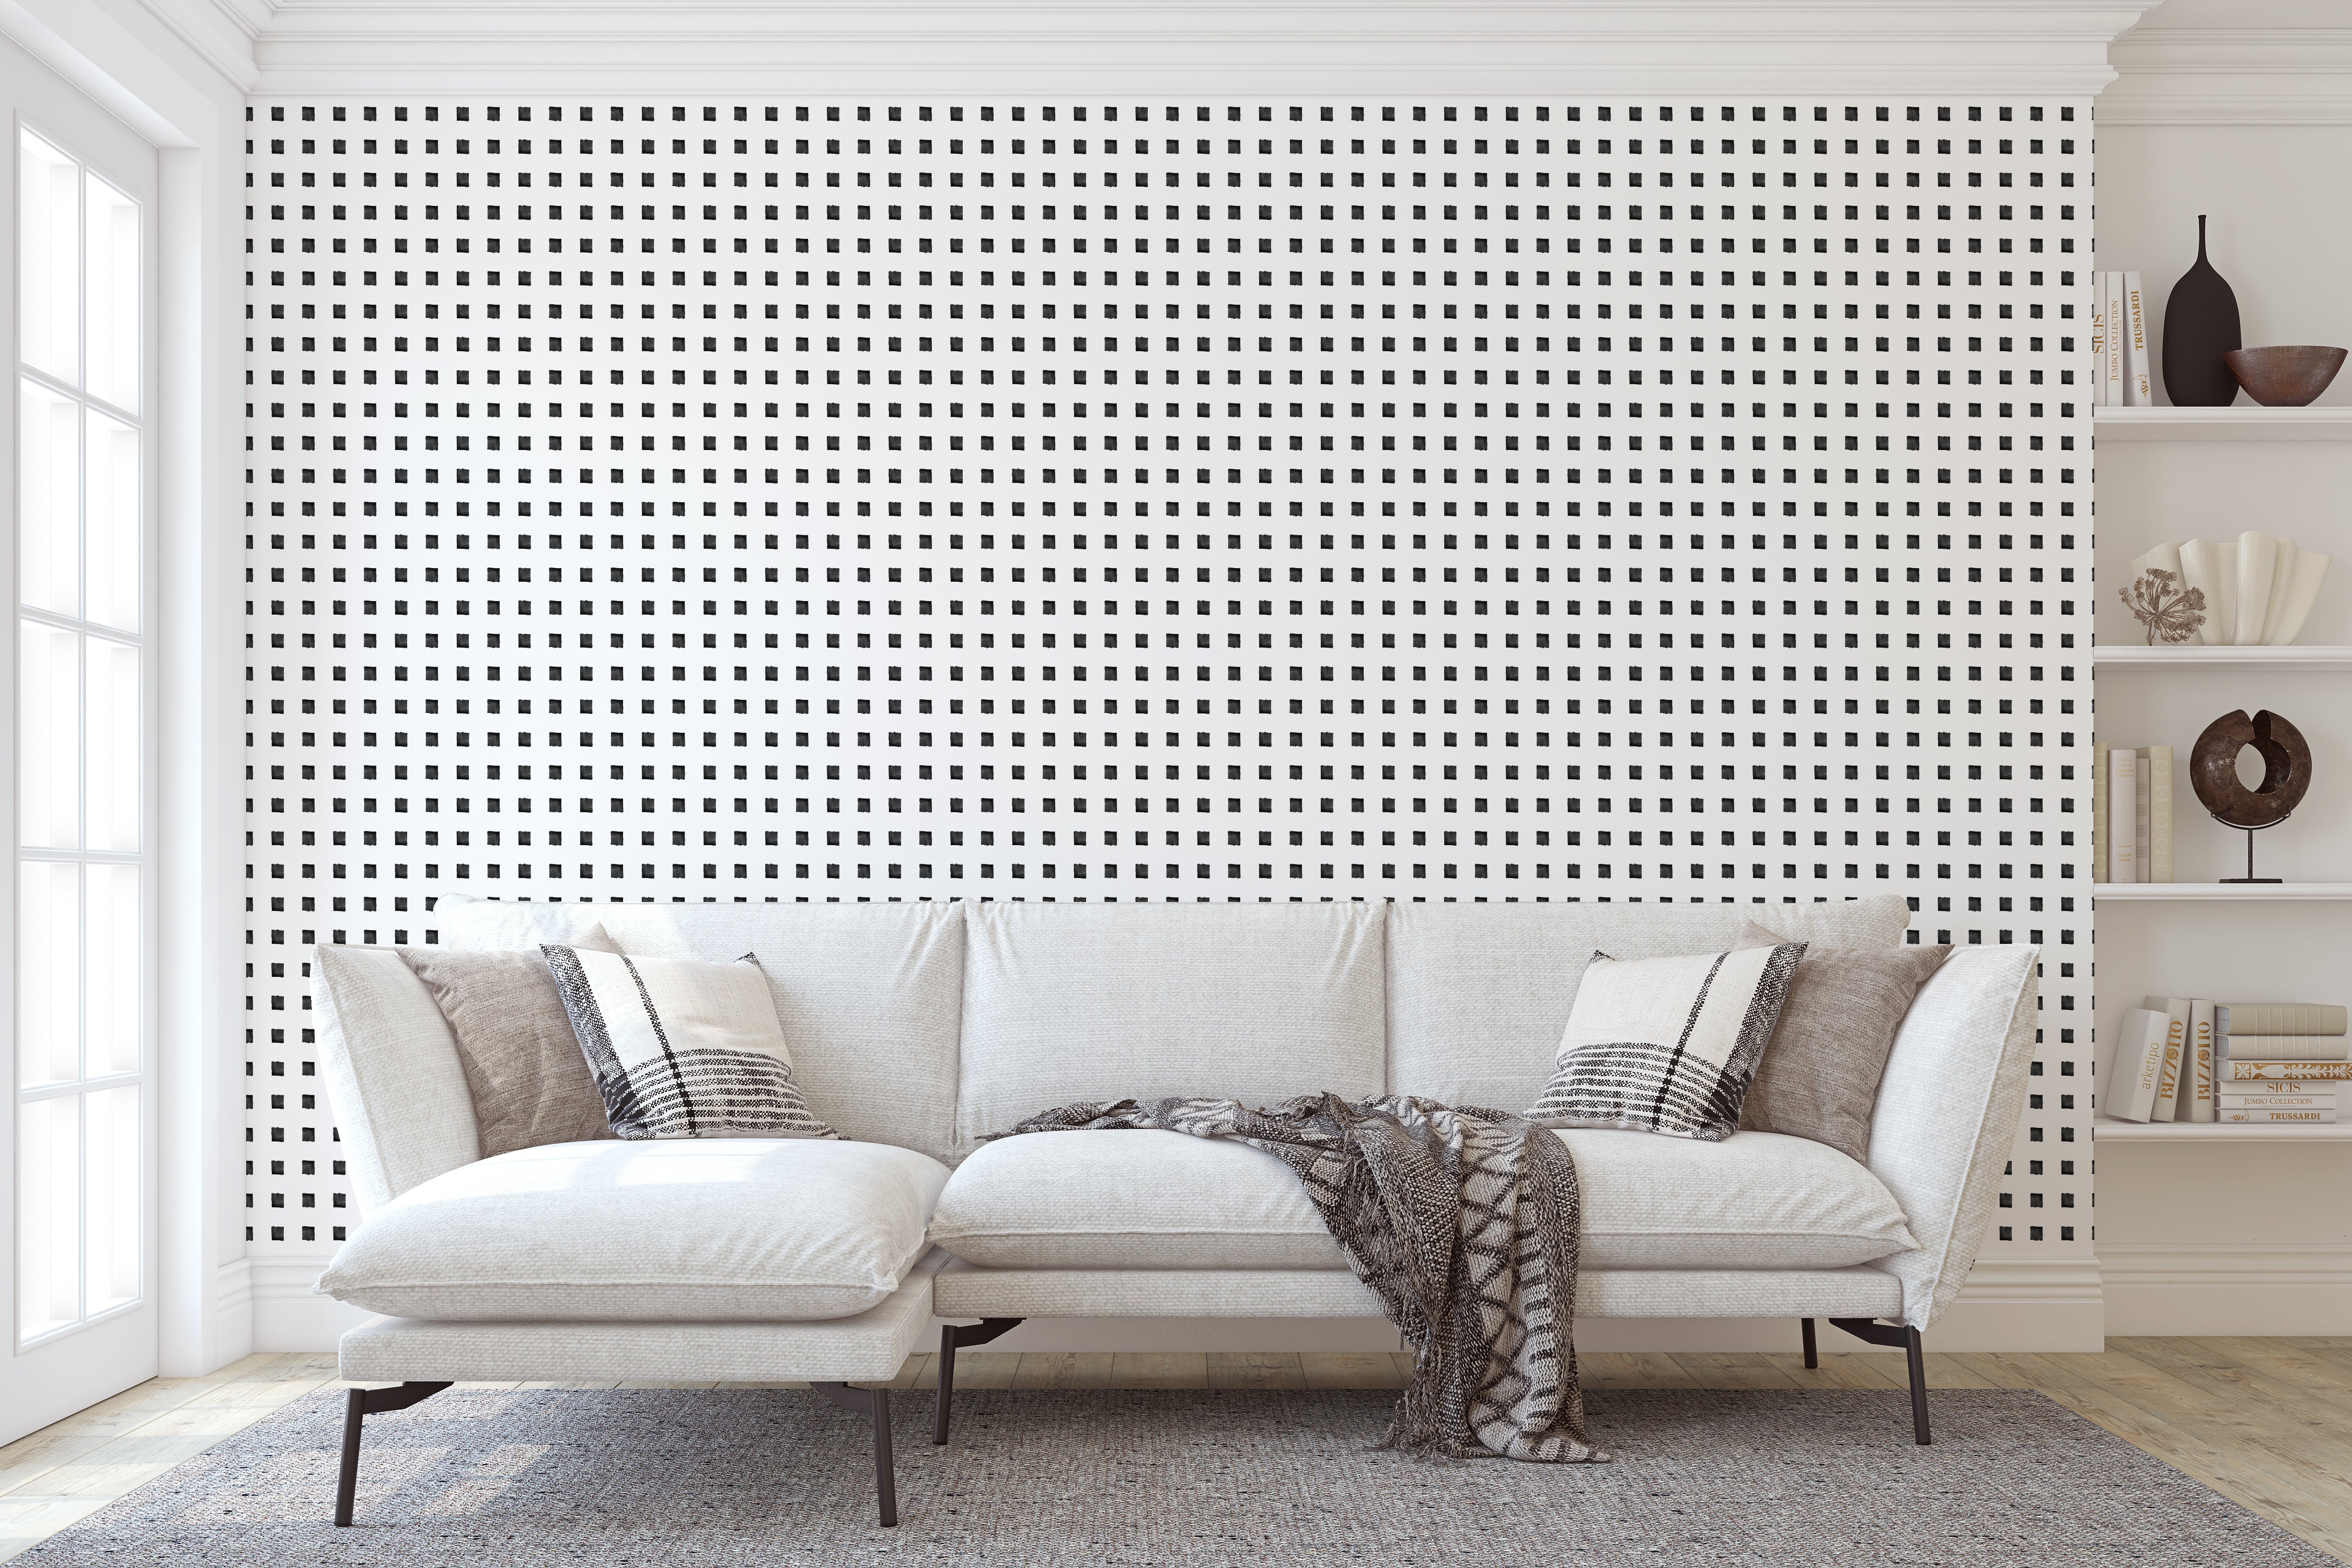 The Tara Wallpaper - Wall Blush from WALL BLUSH